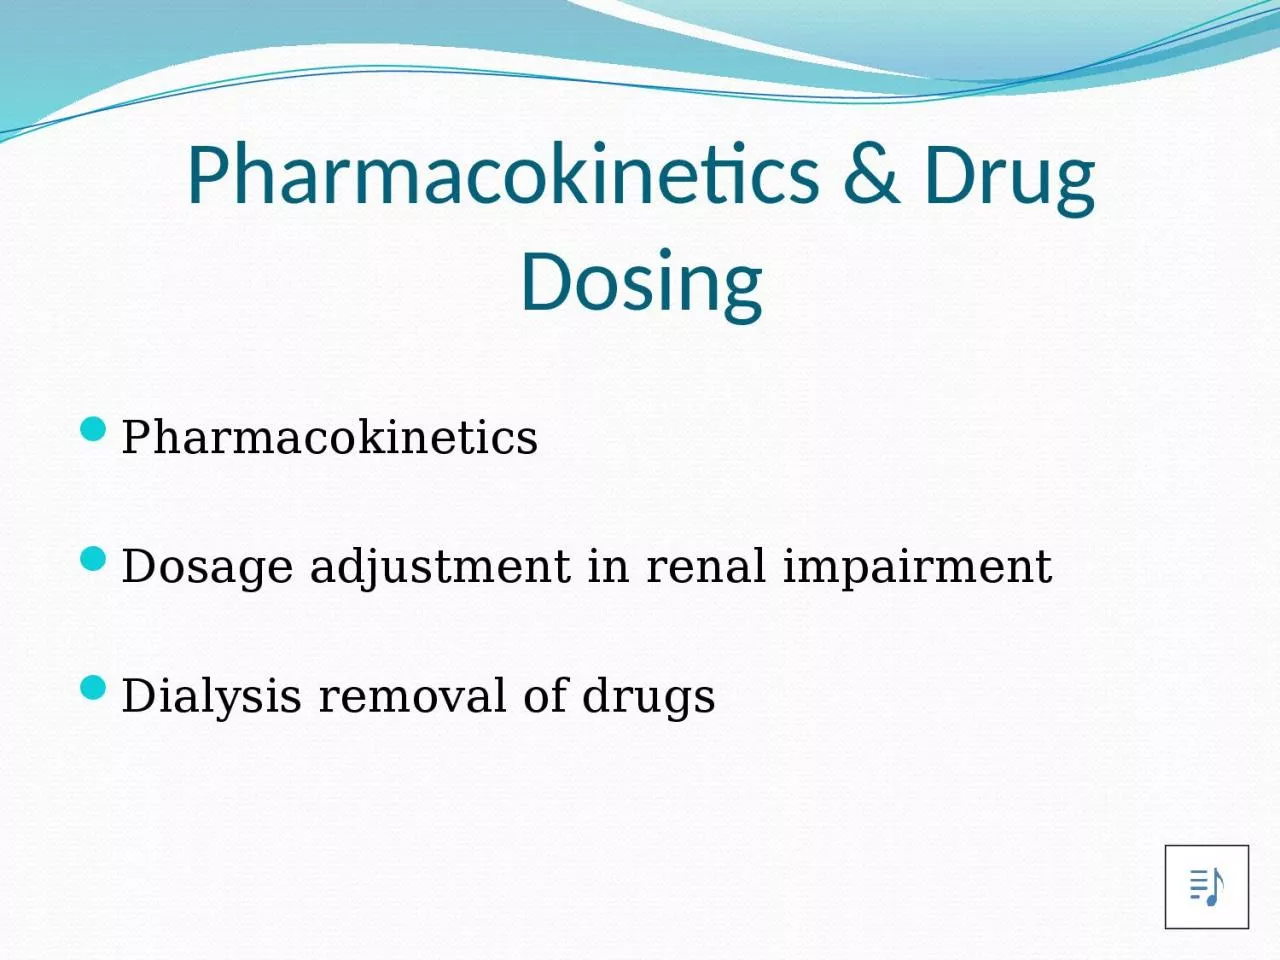 Pharmacokinetics & Drug Dosing